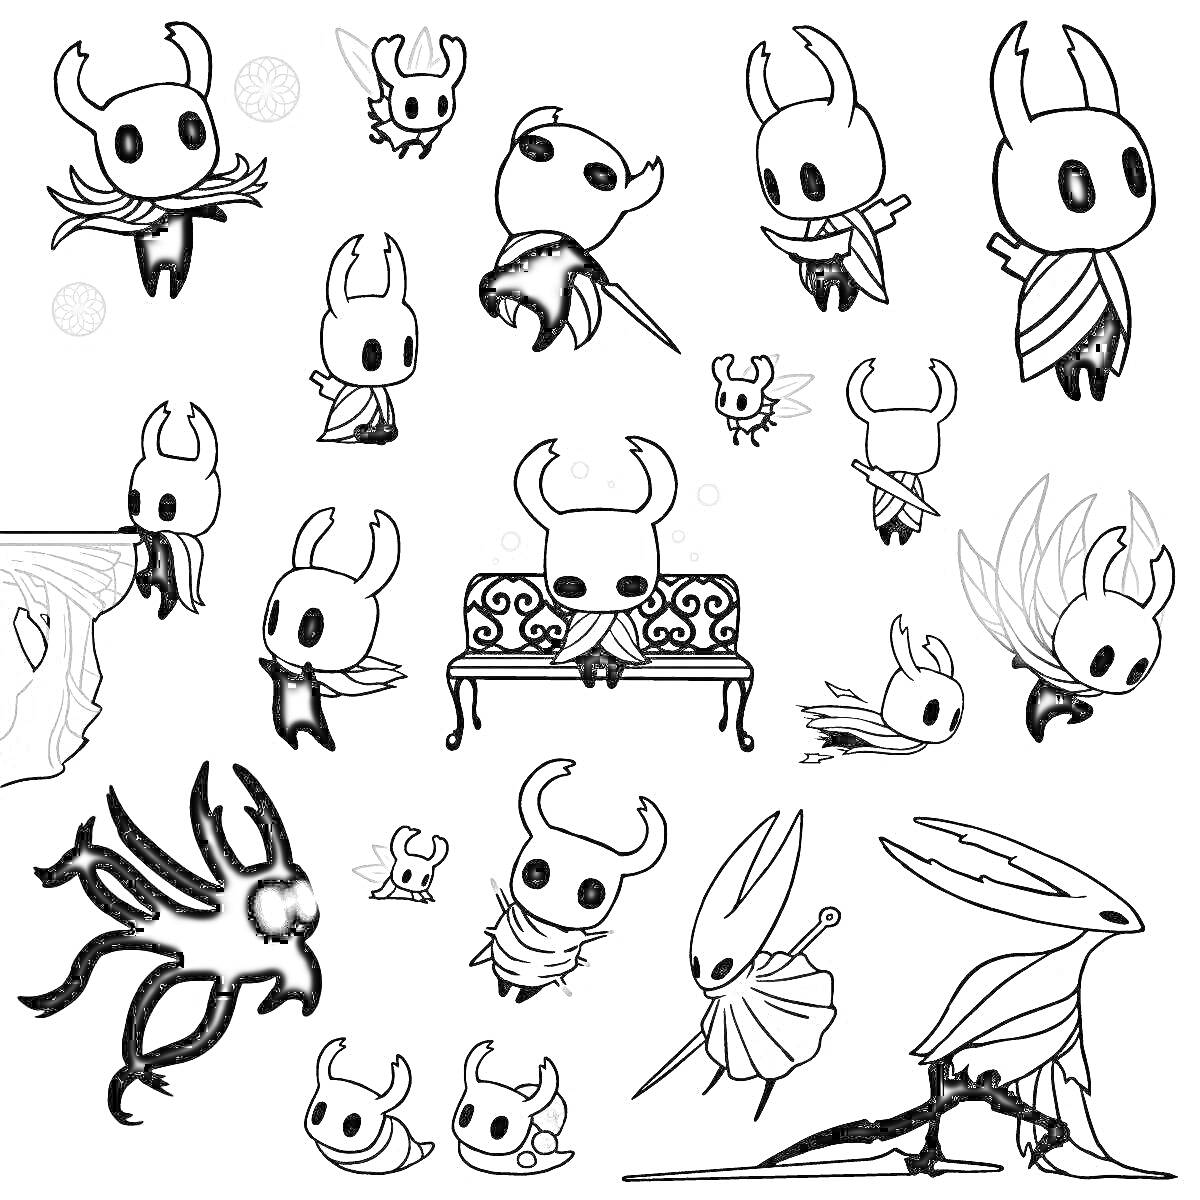 Раскраска Персонажи из игры с элементами масок, накидок, скамейки и монстра